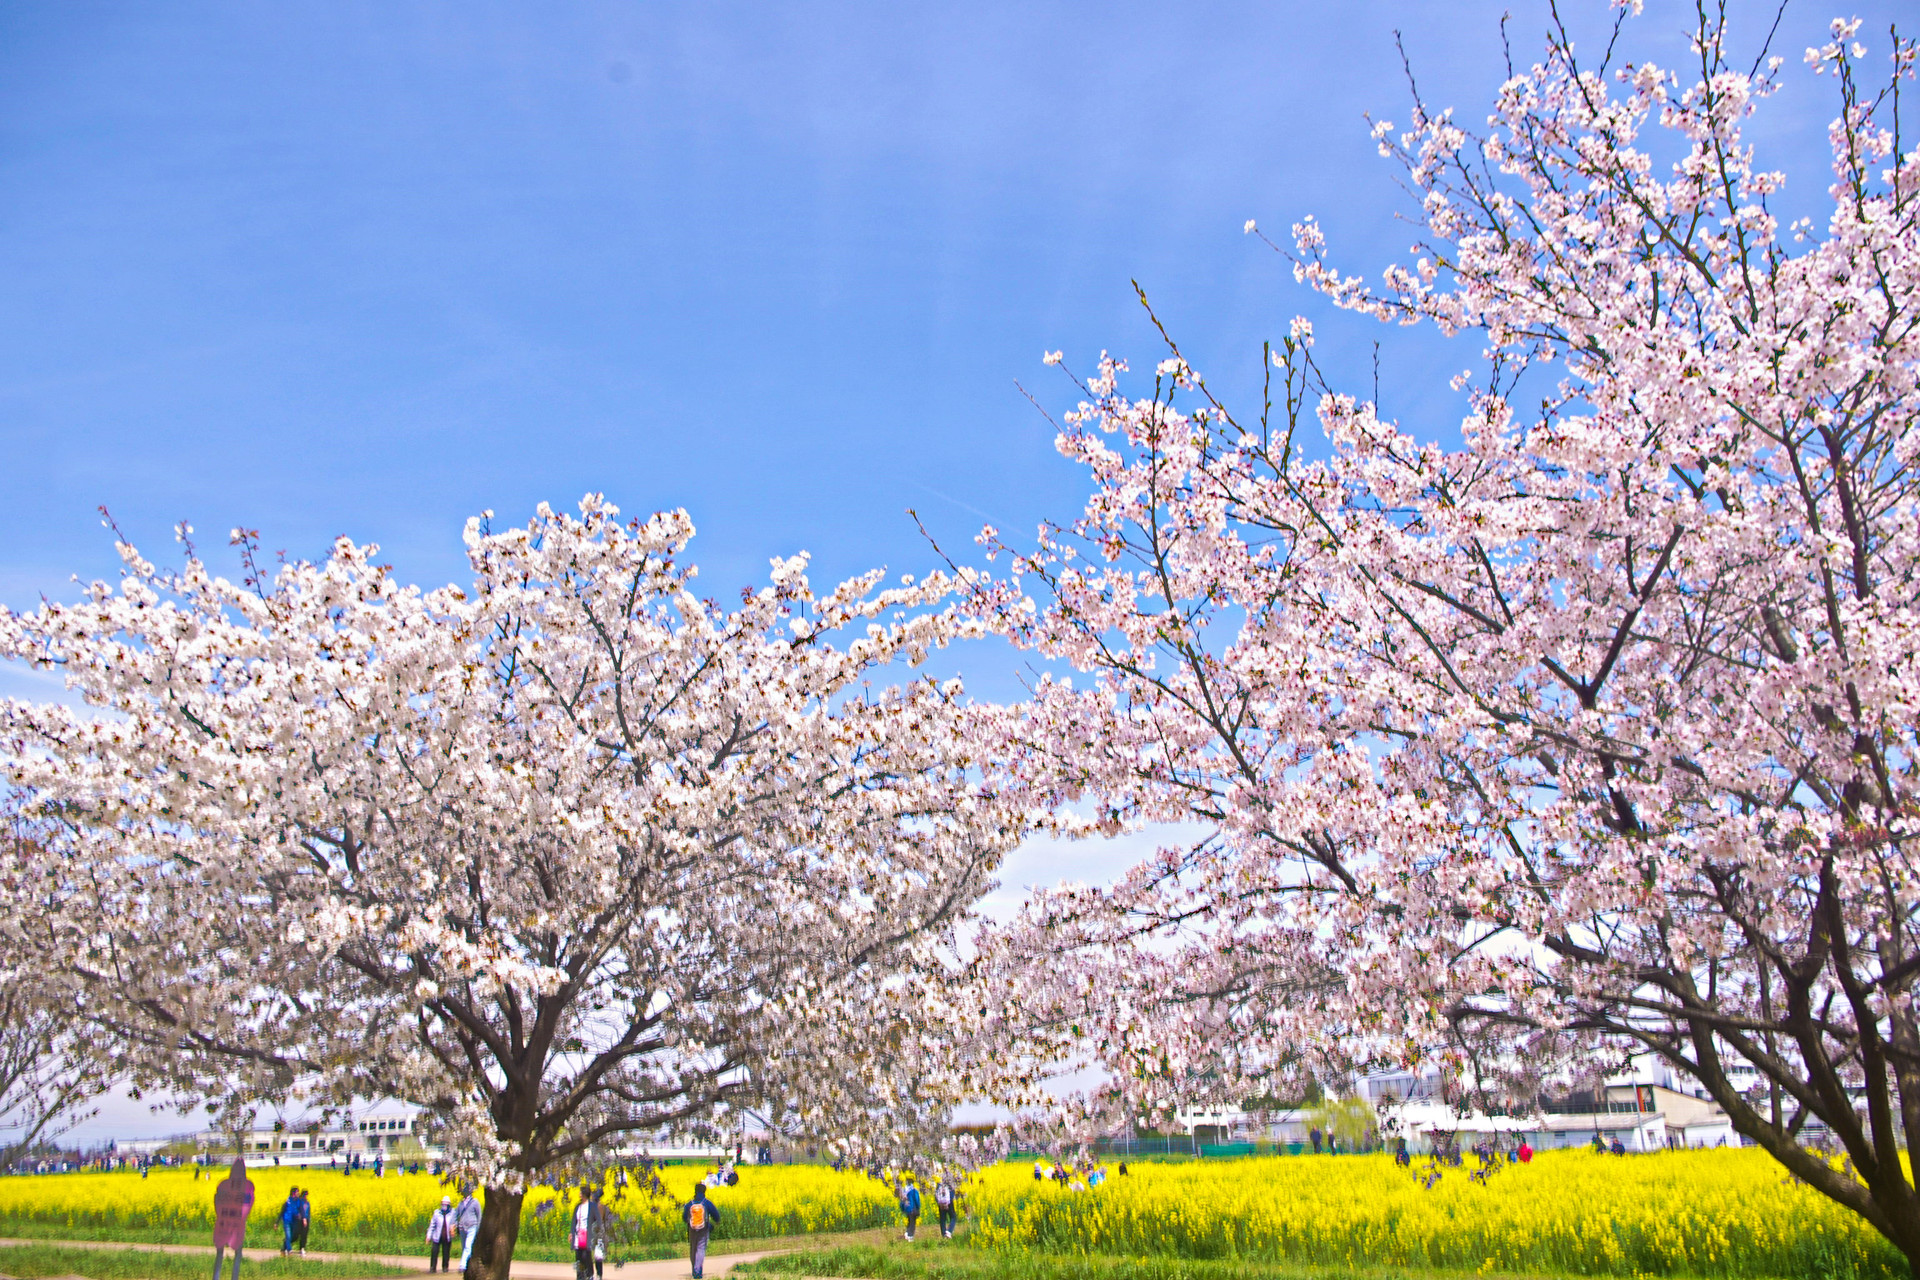 日本の風景 桜と菜の花畑 壁紙19x1280 壁紙館